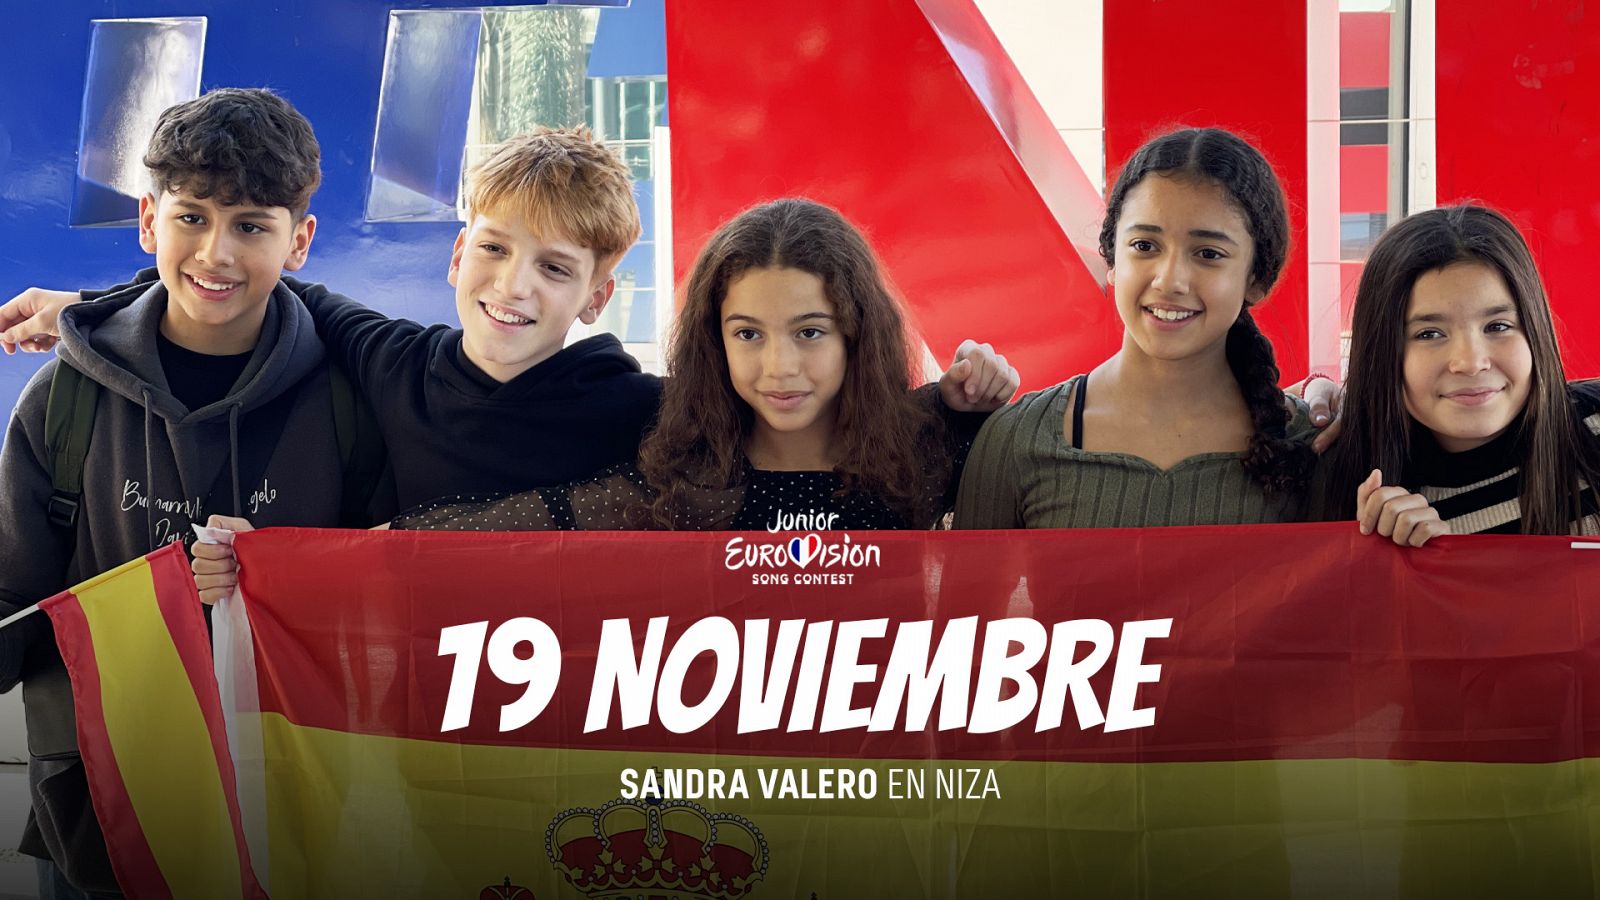 19 de noviembre: Sandra Valero pone rumbo a Niza para participar en Eurovisión Junior 2023